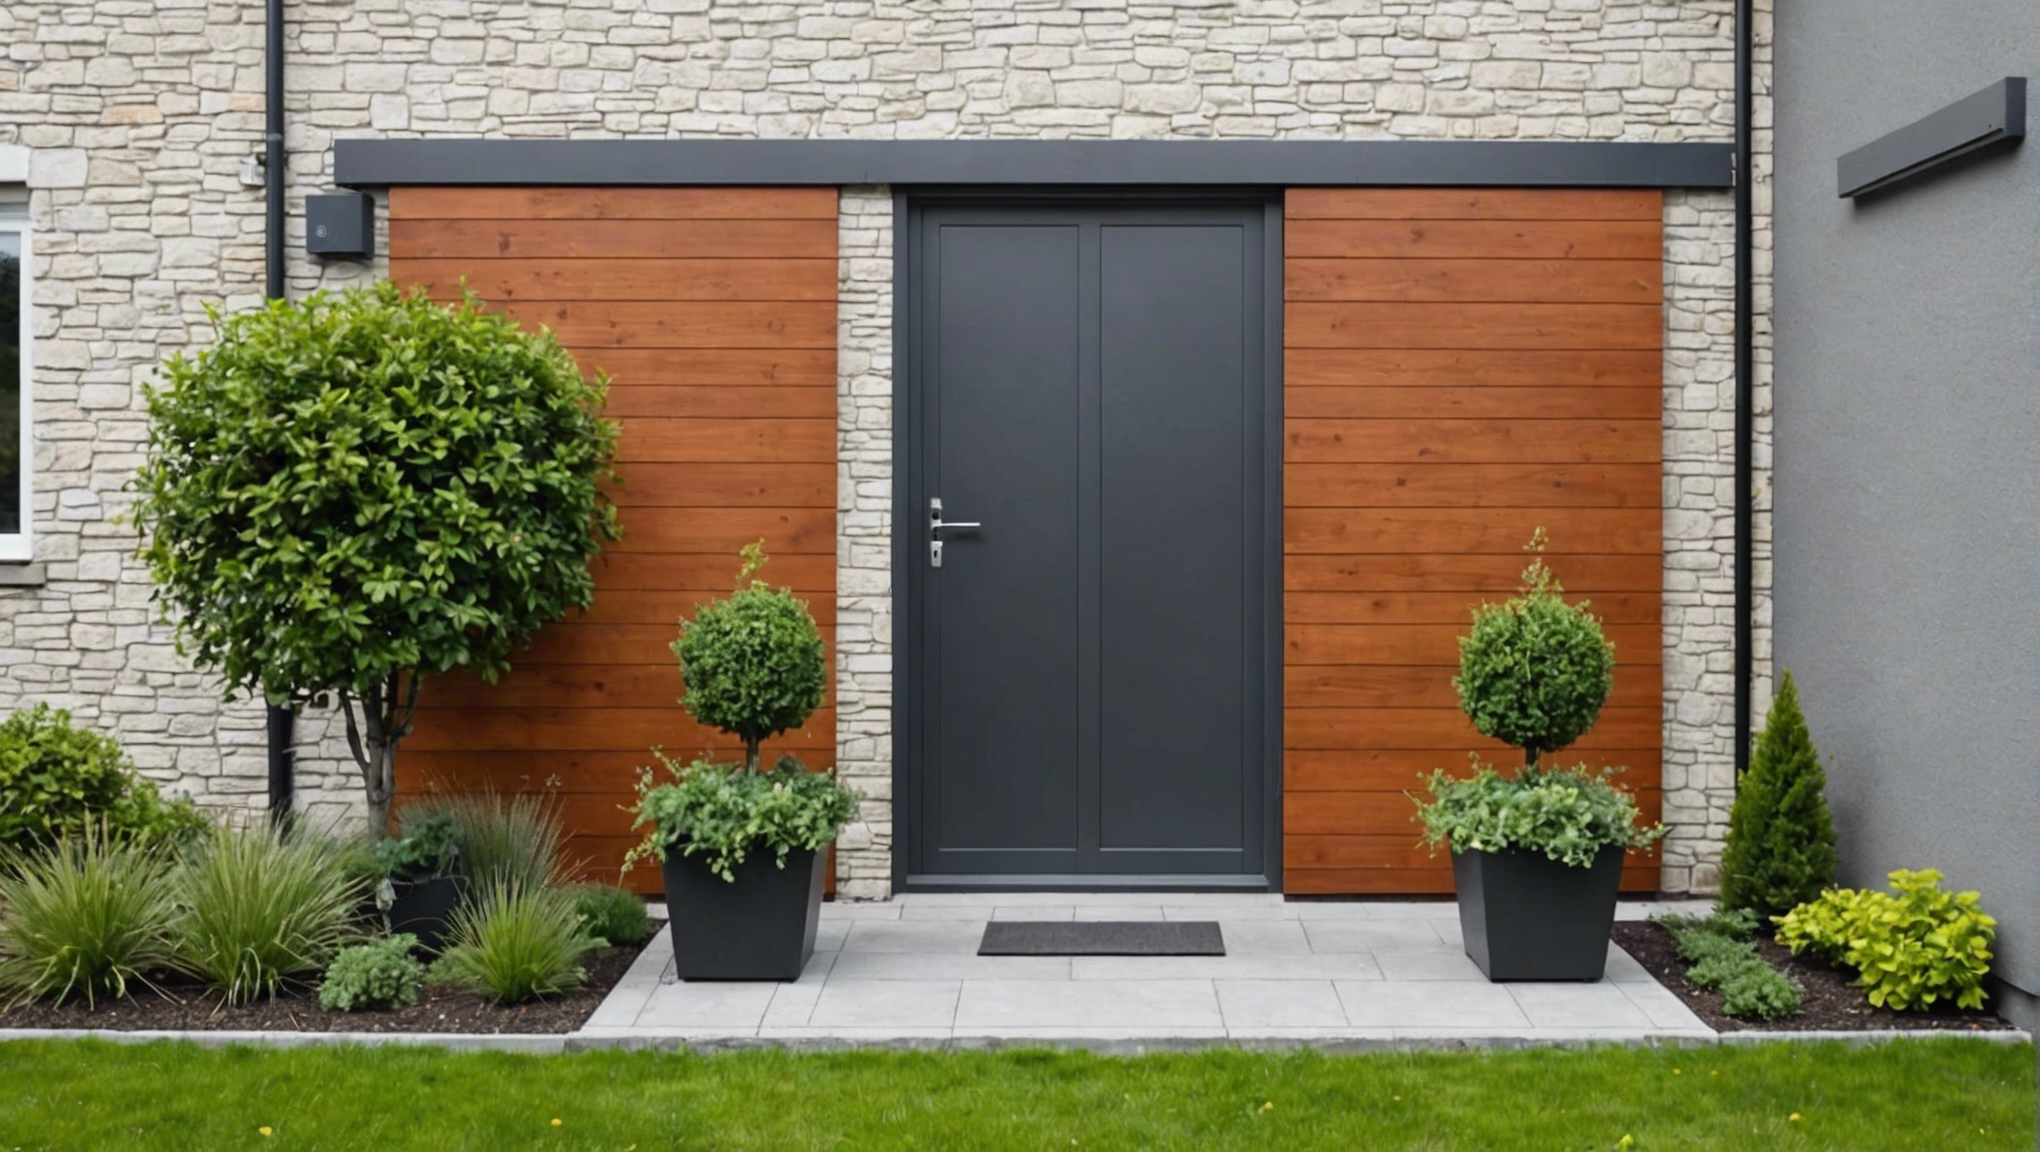 découvrez nos conseils pour choisir la clôture idéale pour votre mur extérieur de maison et profitez d'un espace extérieur à la fois sécurisé et esthétique.